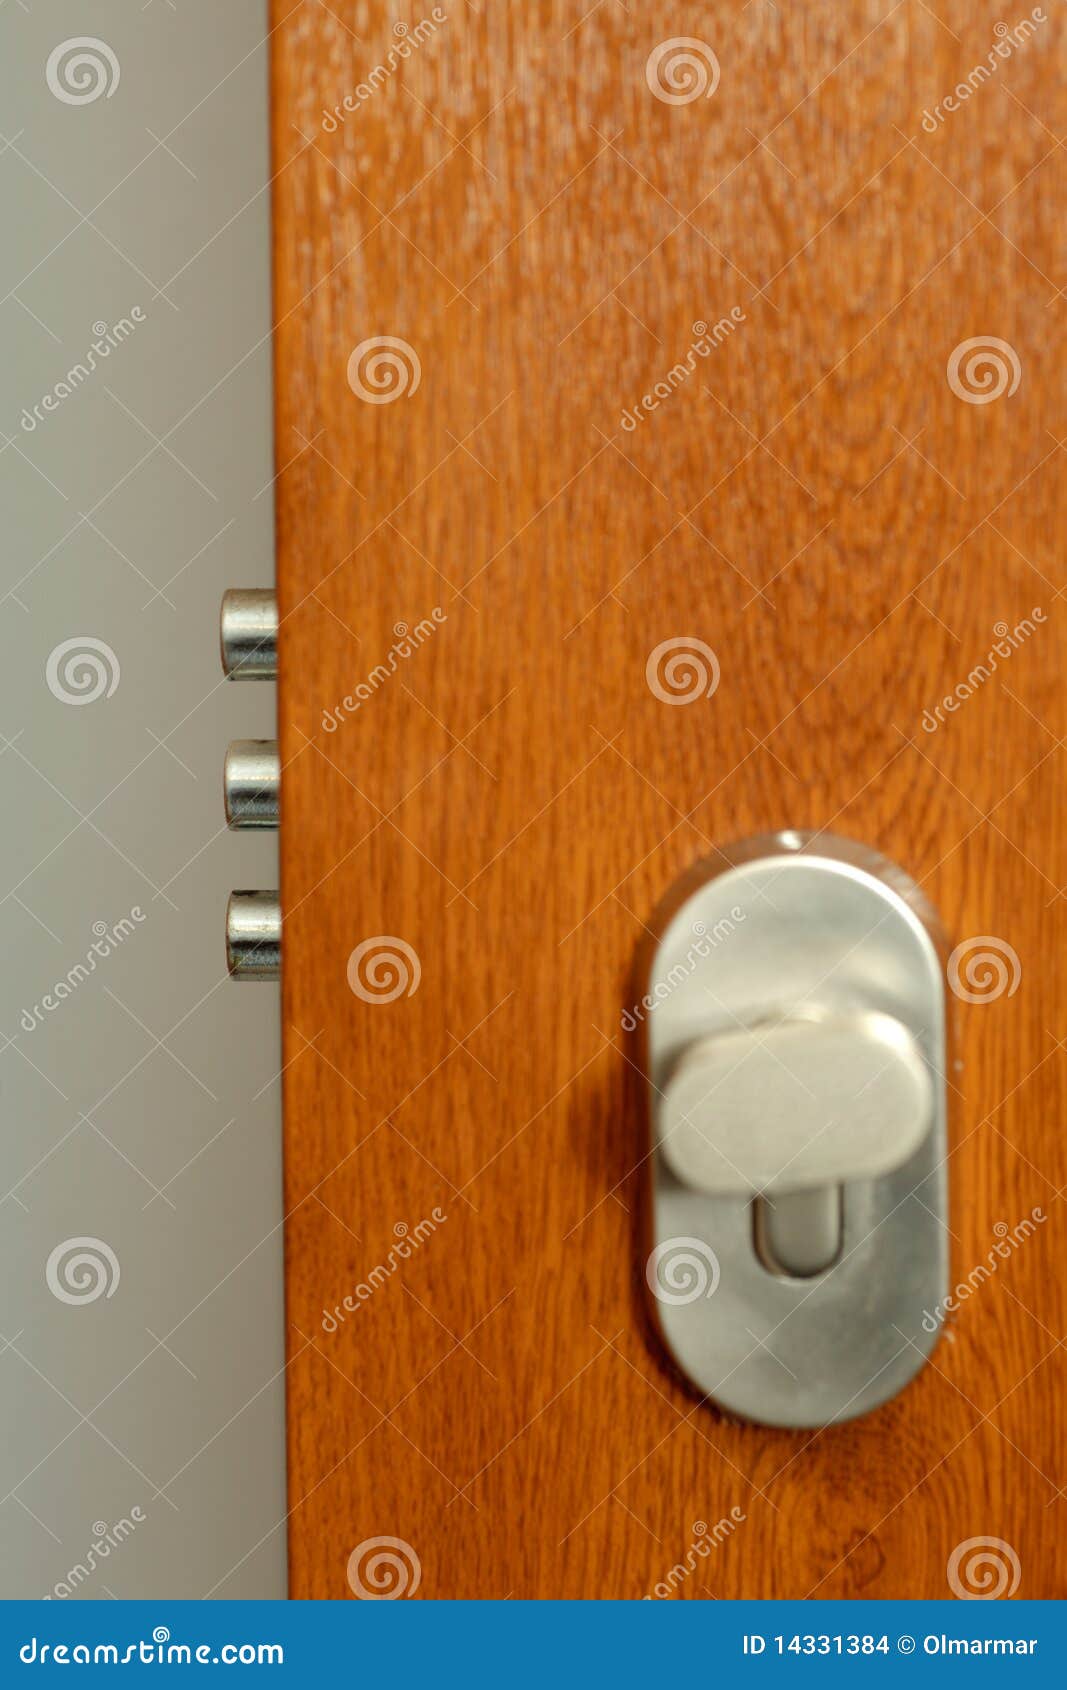 lock - detail of modern office door